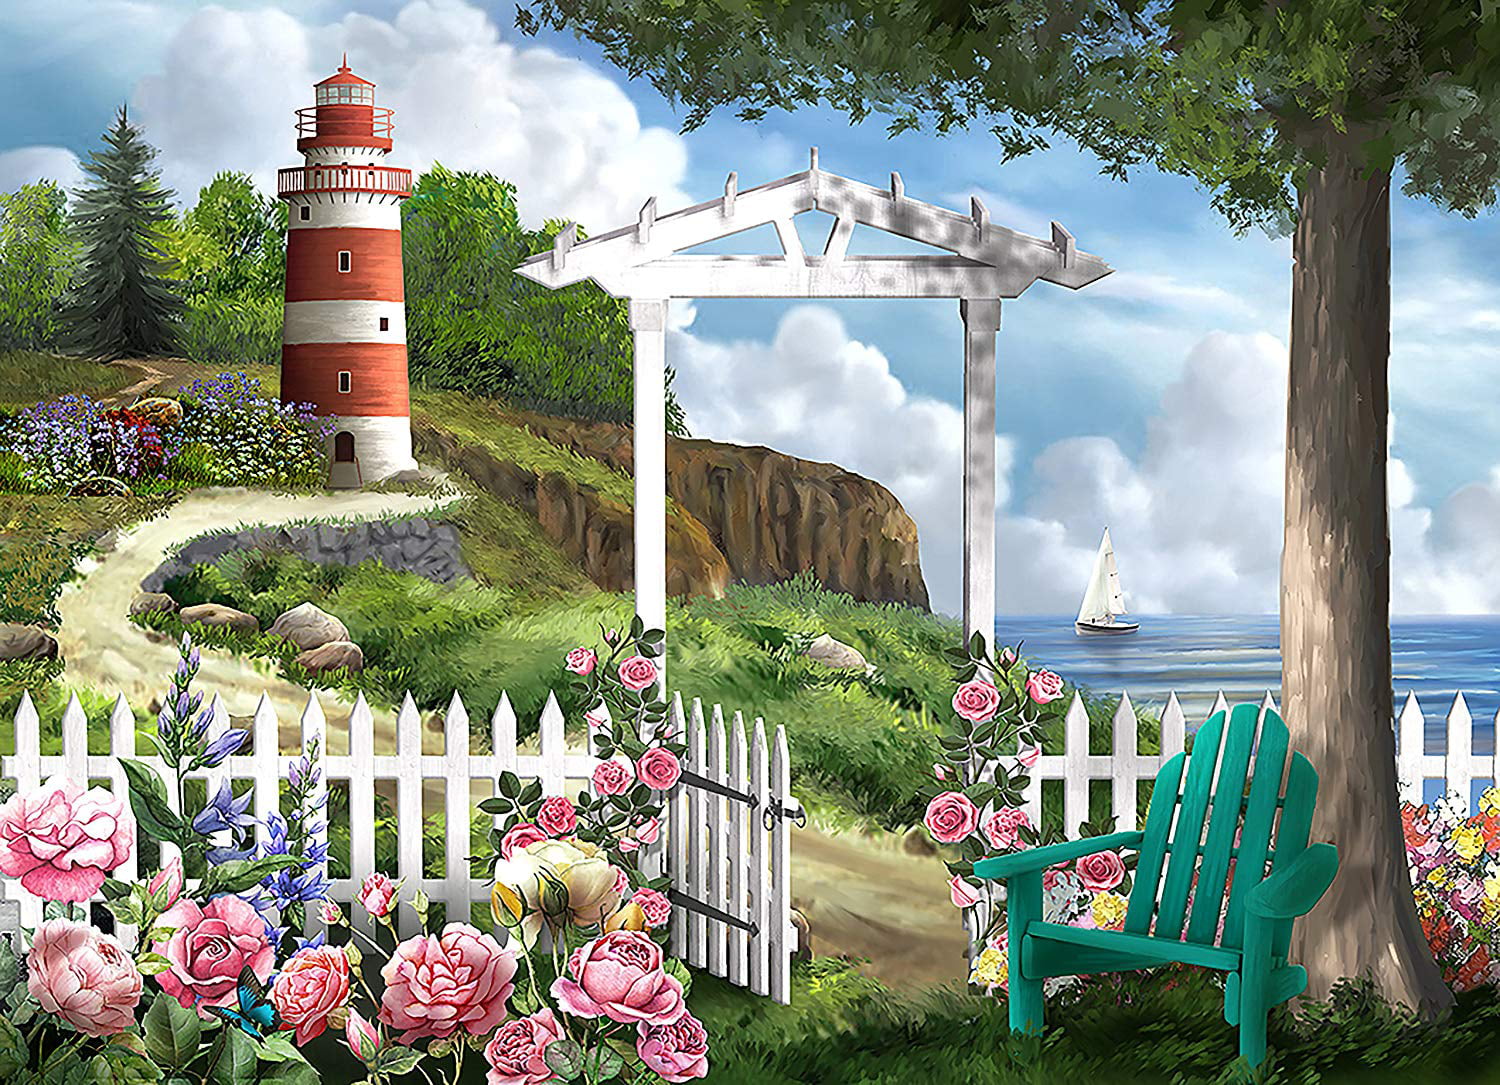 Jigsaw 500 Pieces Pcs Various Scenes Landscapes Buildings Lighthouse Castle BNIB 